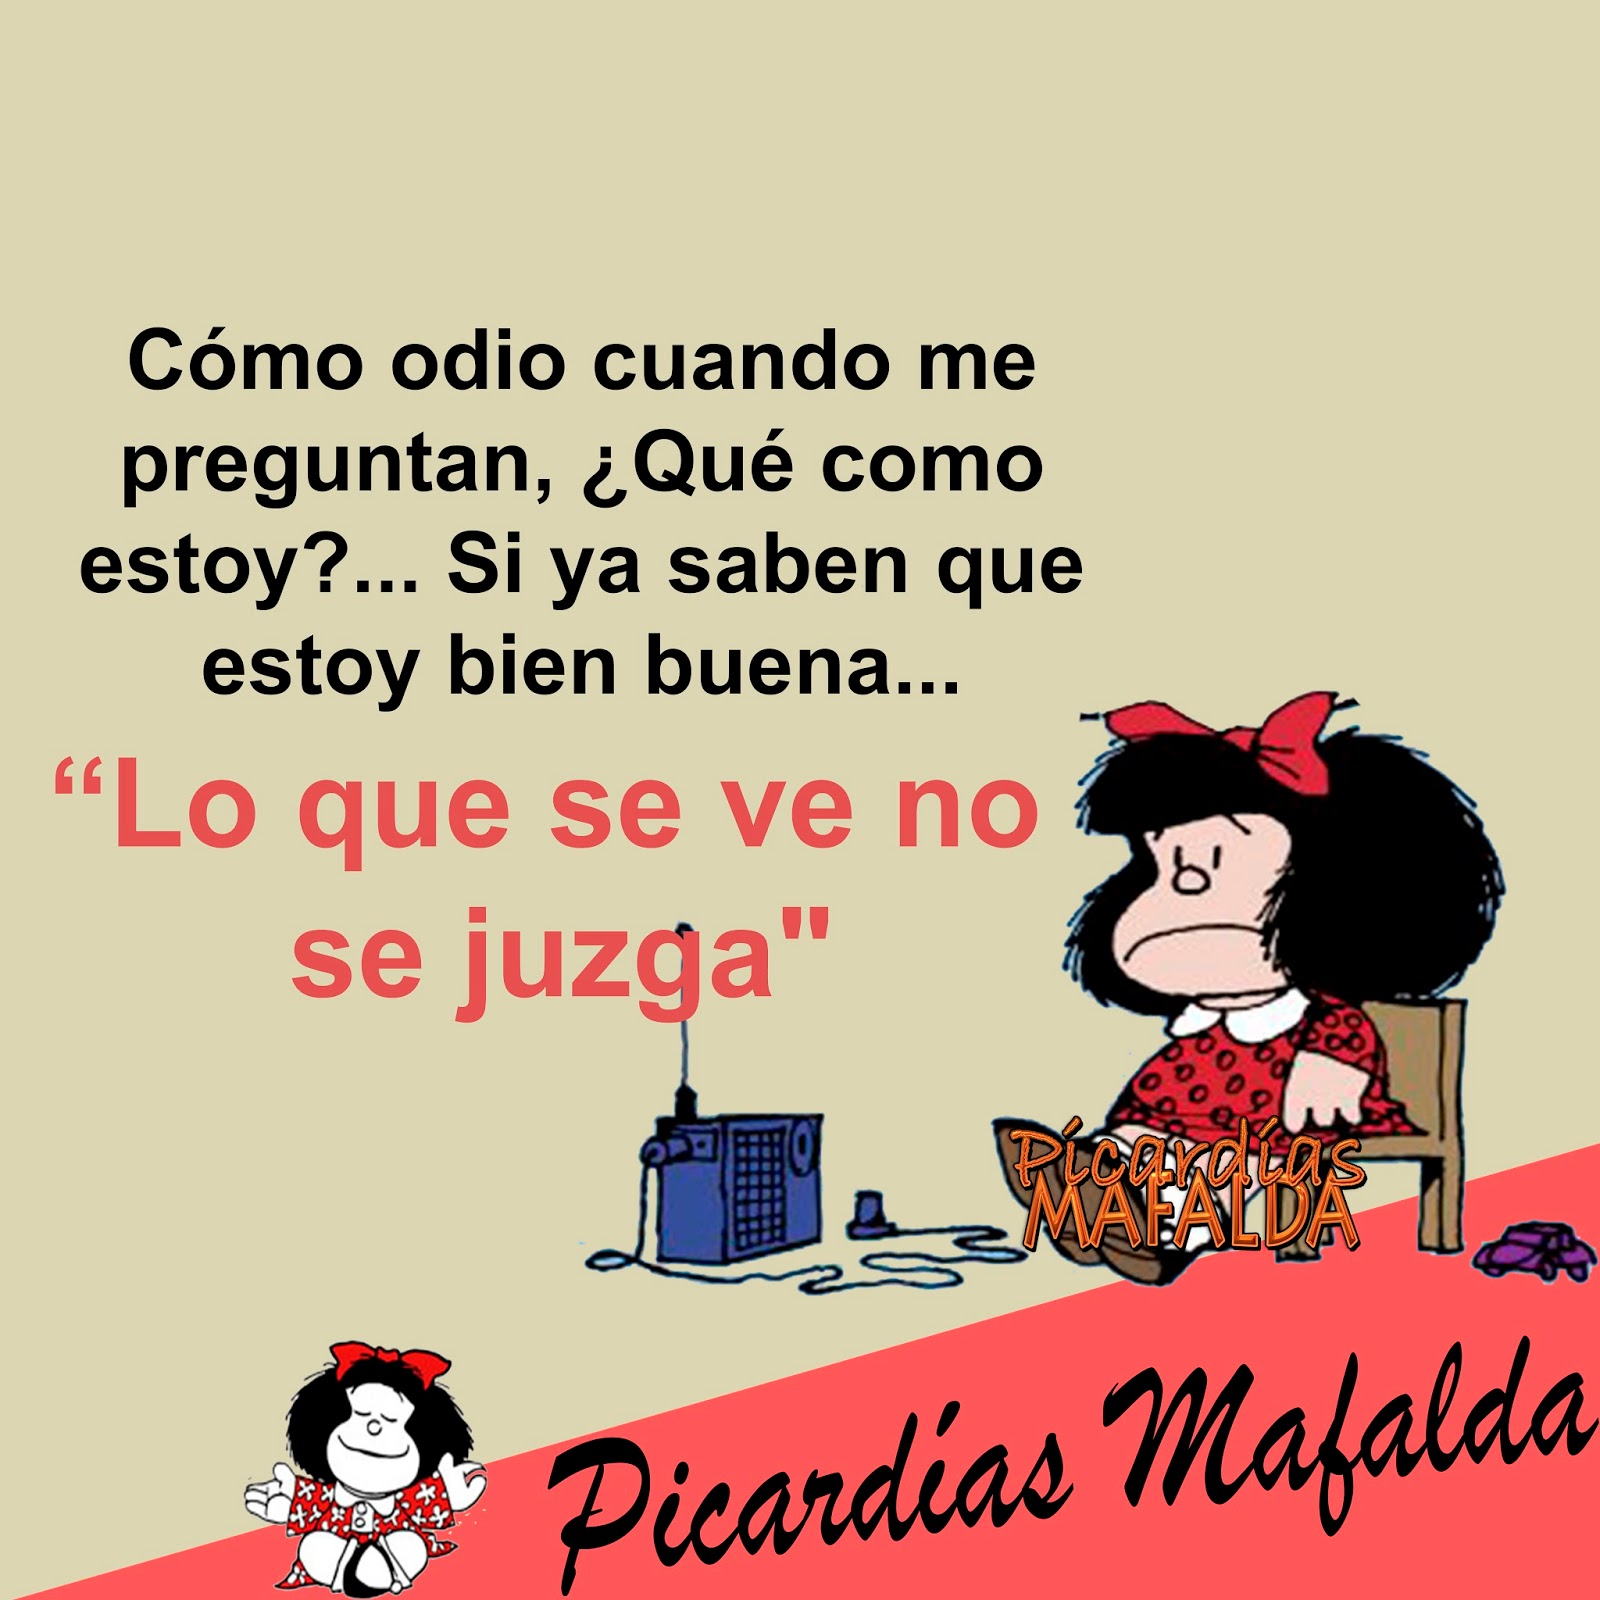 Chistes de mafalda, Mafalda, Imagenes de mafalda frases